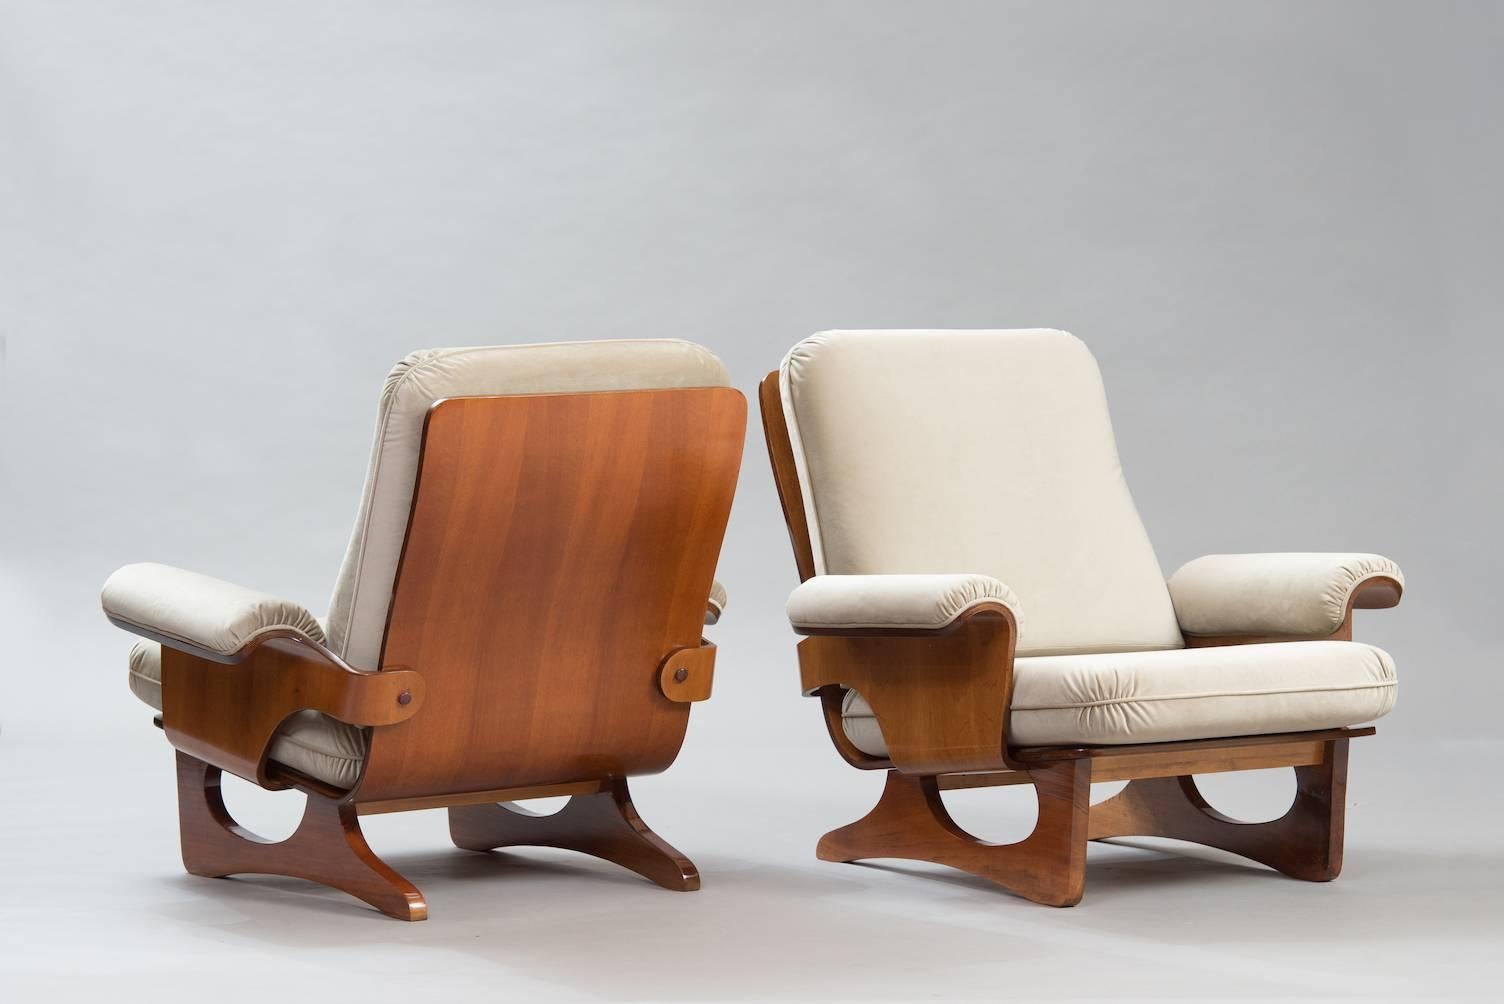 Pair of molded wood armchairs in walnut veneer reupholstered in warm grey velvet.